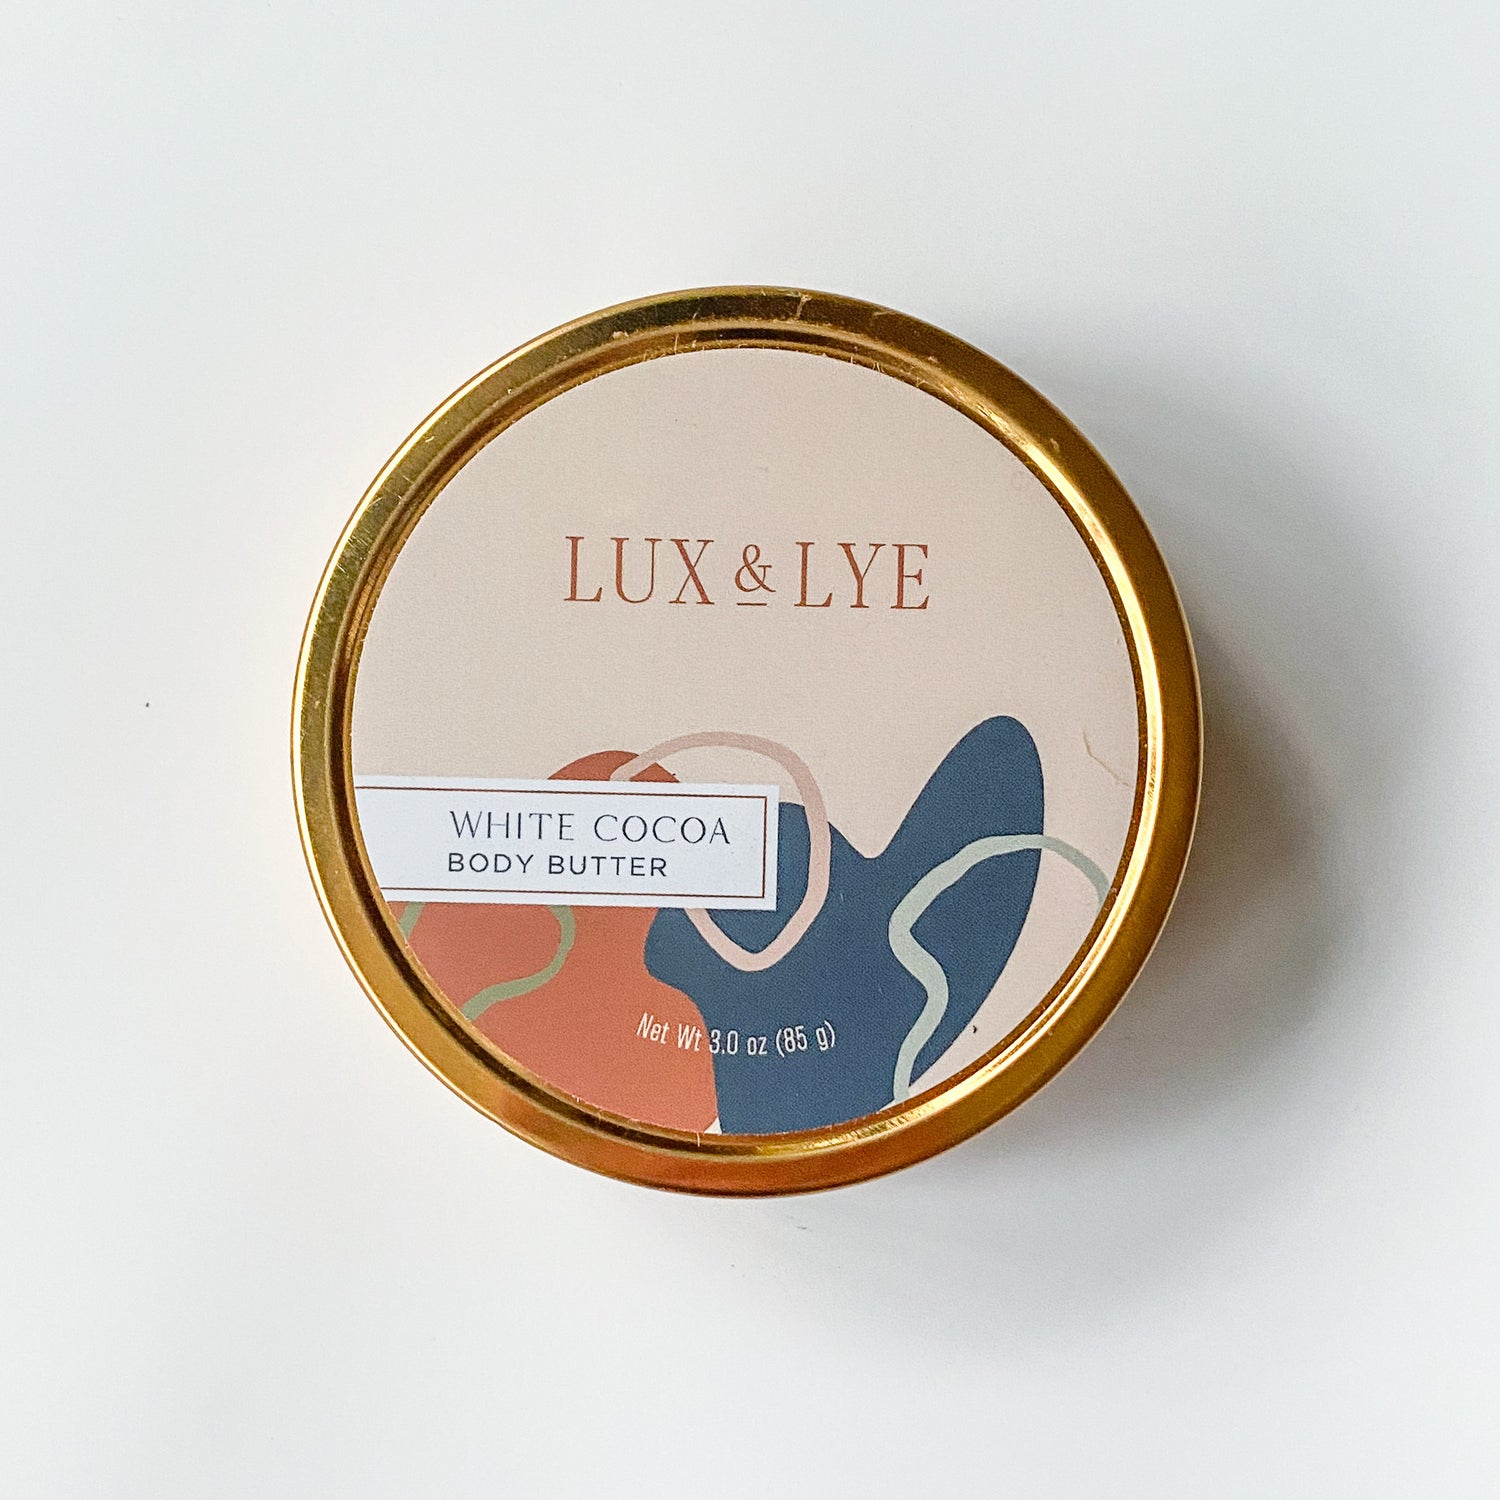 Body Butter by Lux & Lye